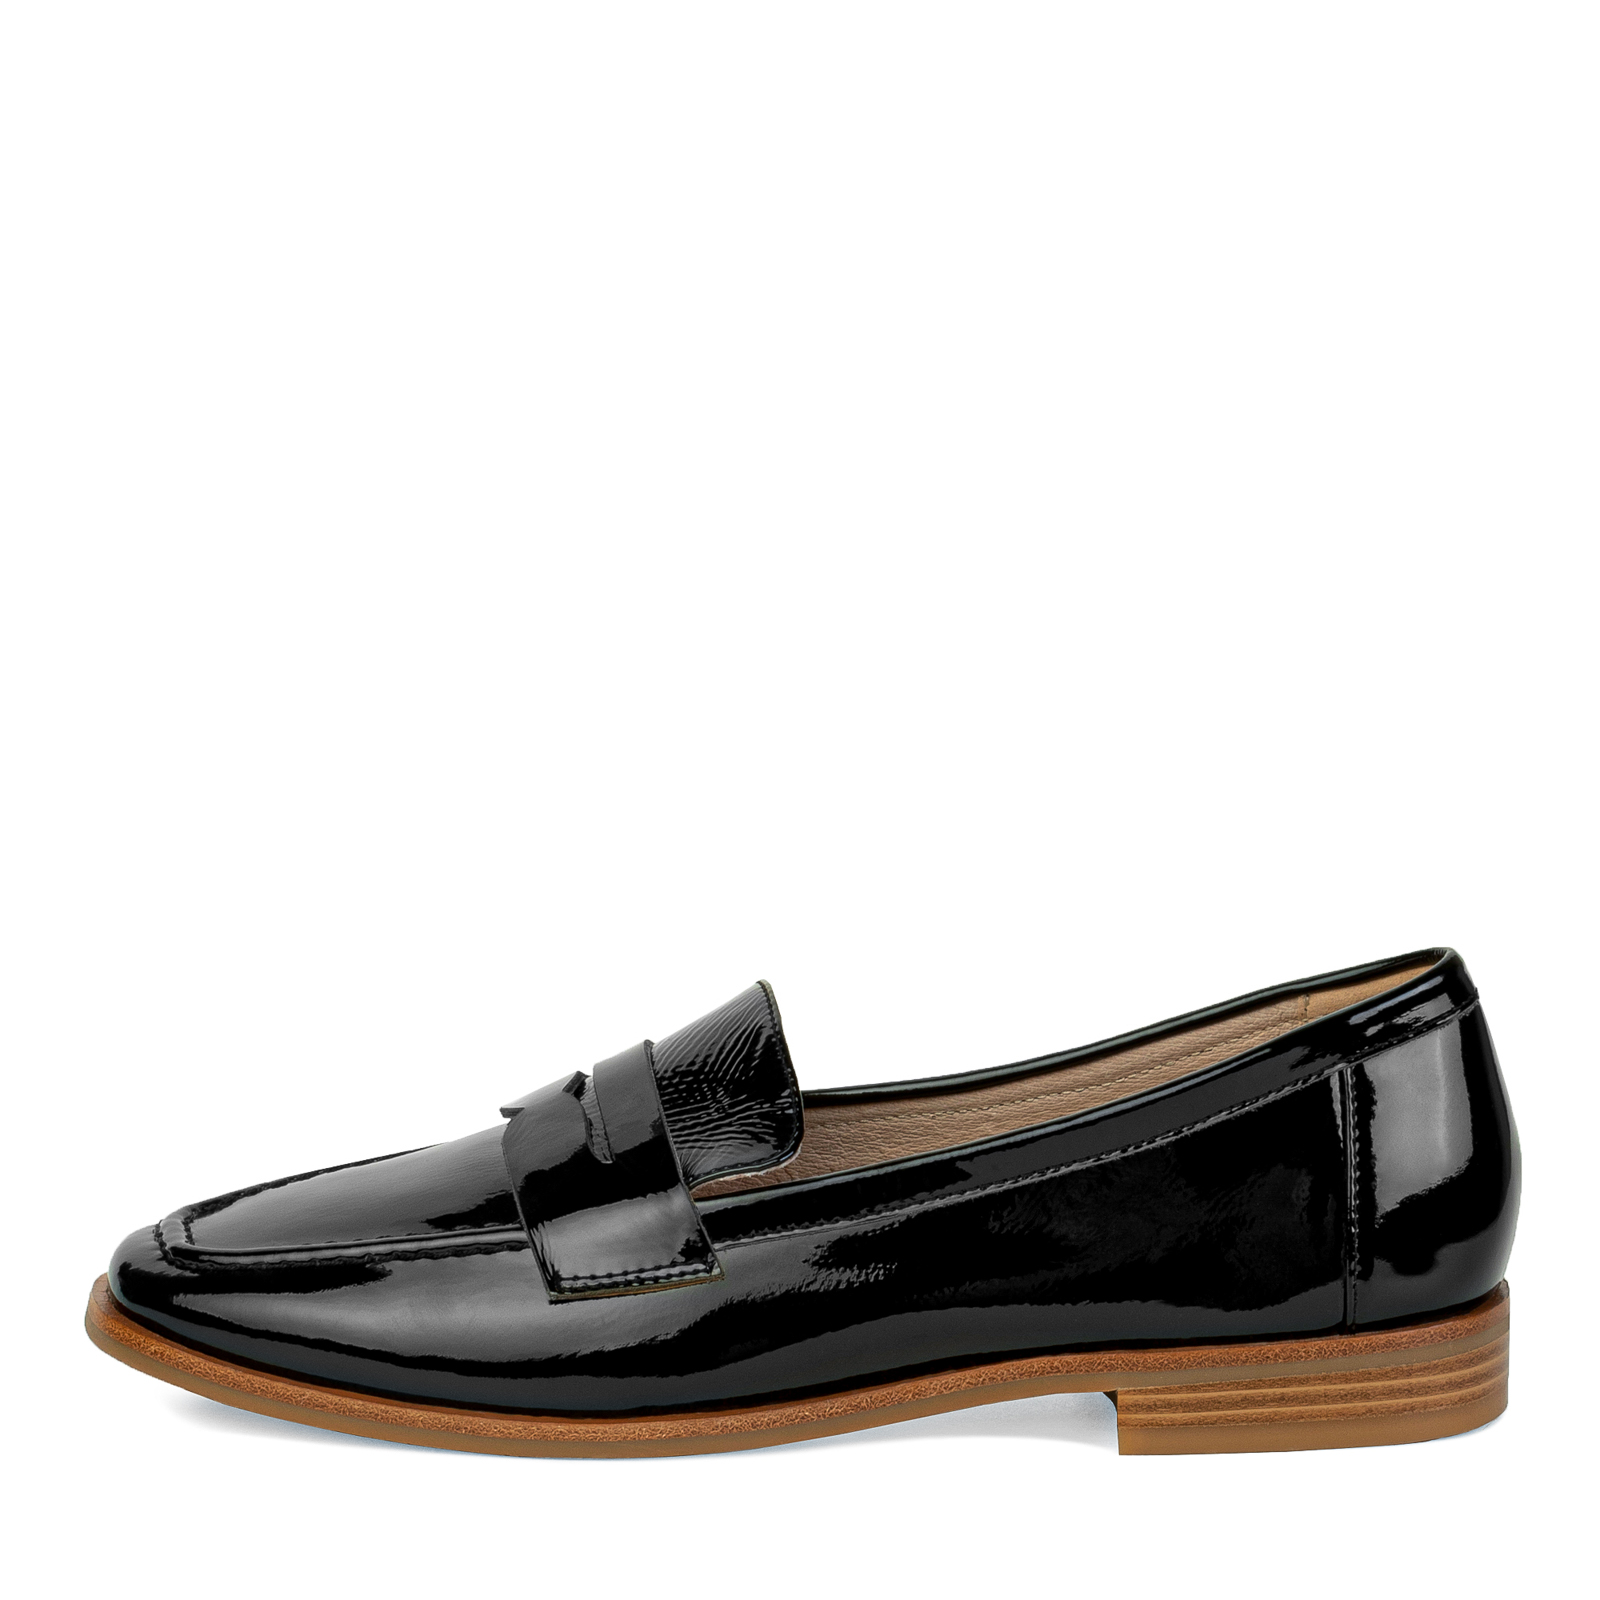 Туфли Thomas Munz 233-816A-1602, цвет черный, размер 41